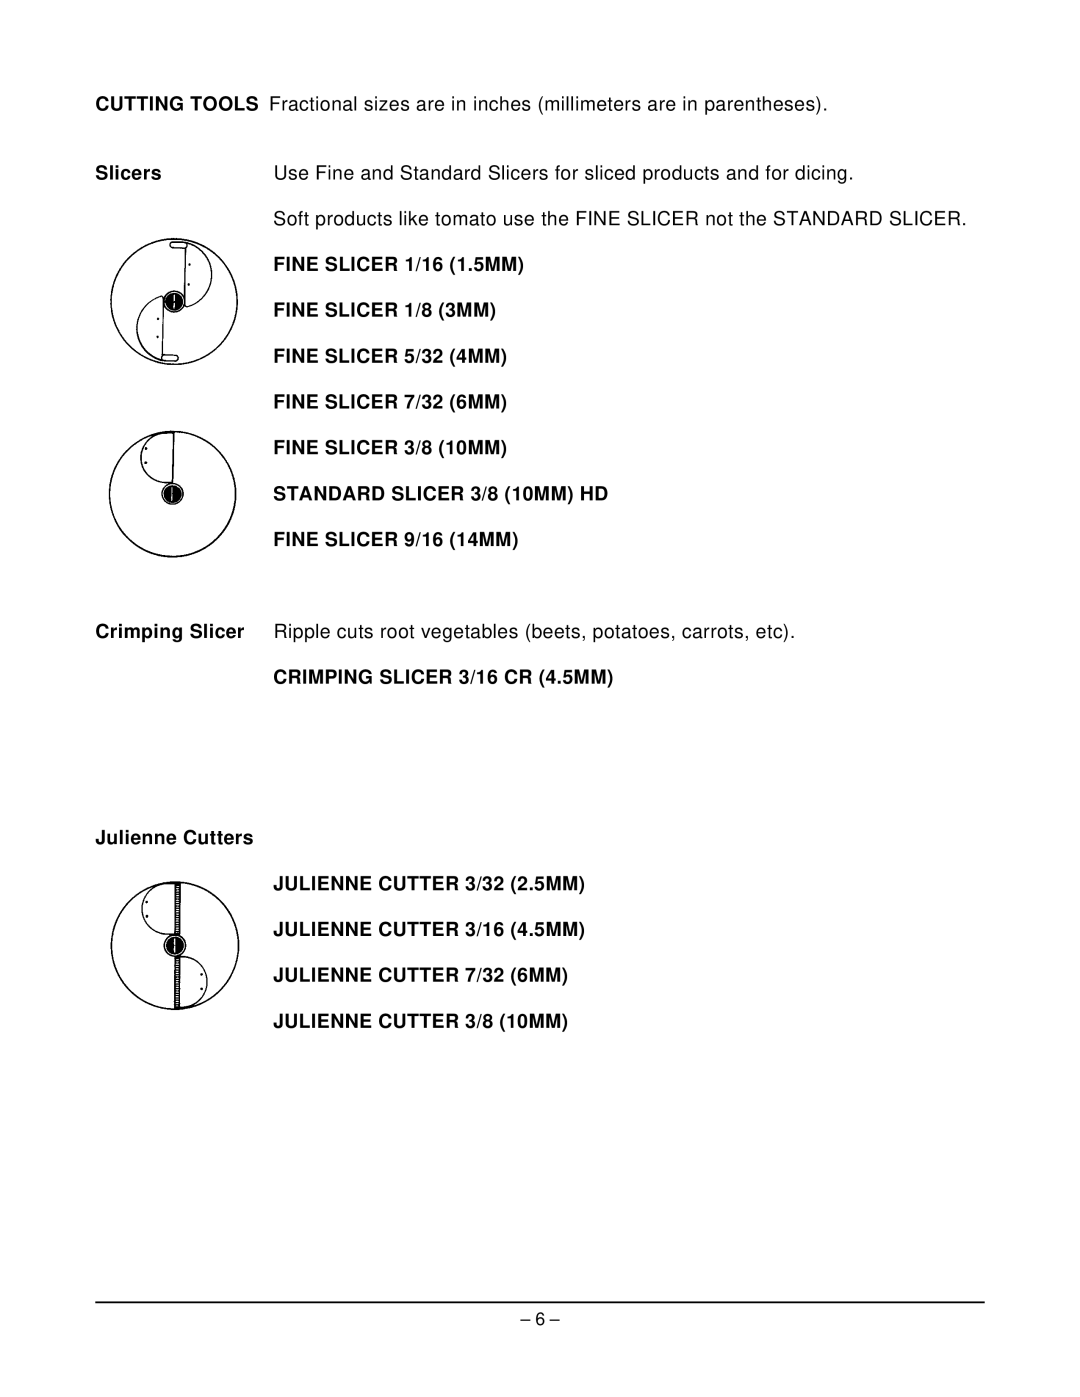 Hobart FP300 manual Slicers, FINE SLICER 1/16 1.5MM, FINE SLICER 1/8 3MM, FINE SLICER 5/32 4MM, FINE SLICER 7/32 6MM 